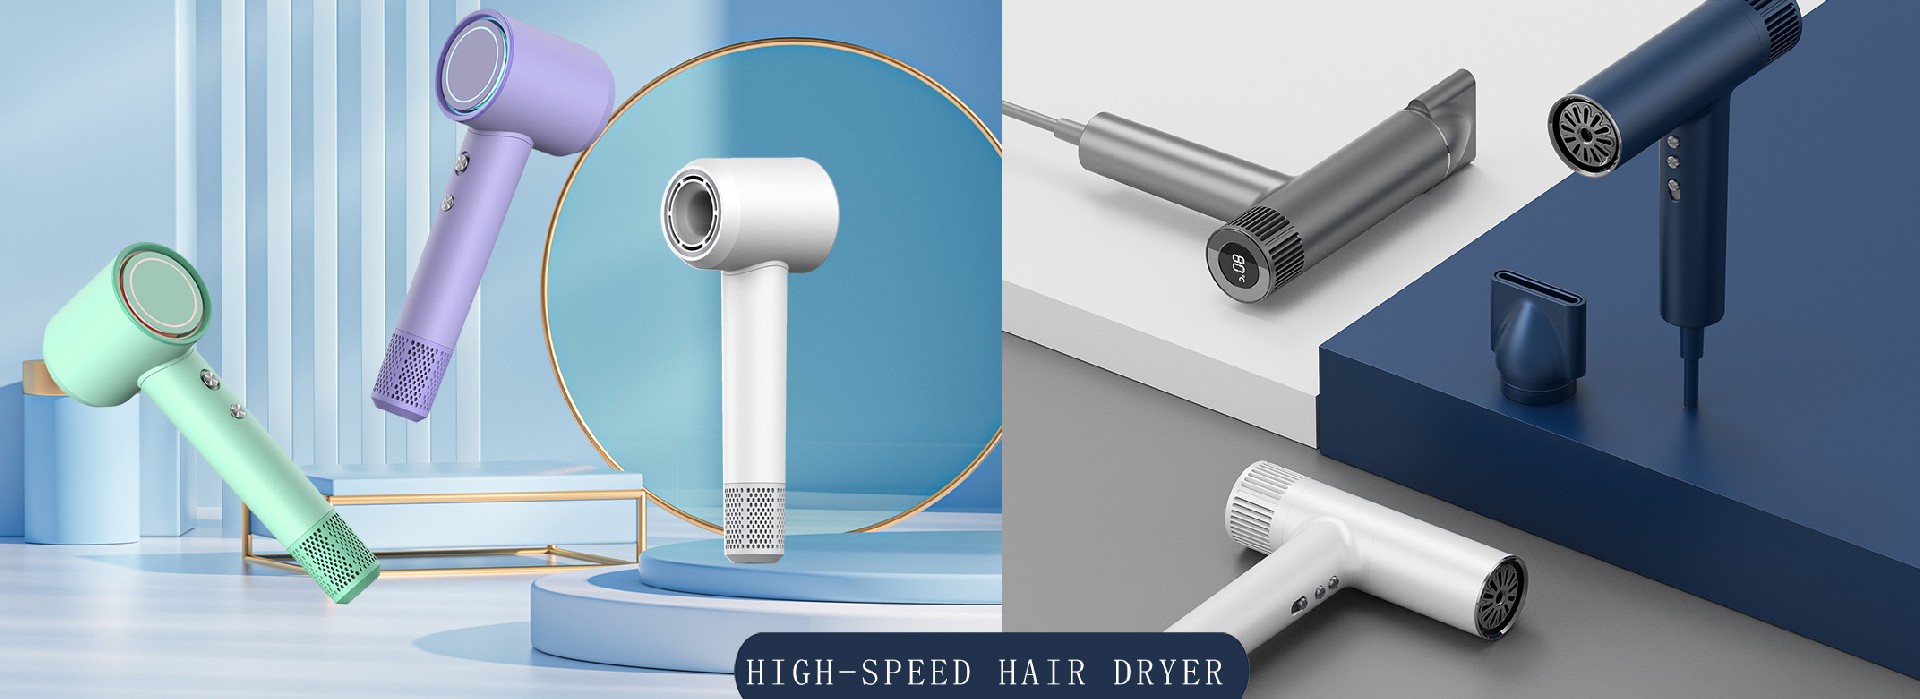 Intelligent high-speed hair dryer